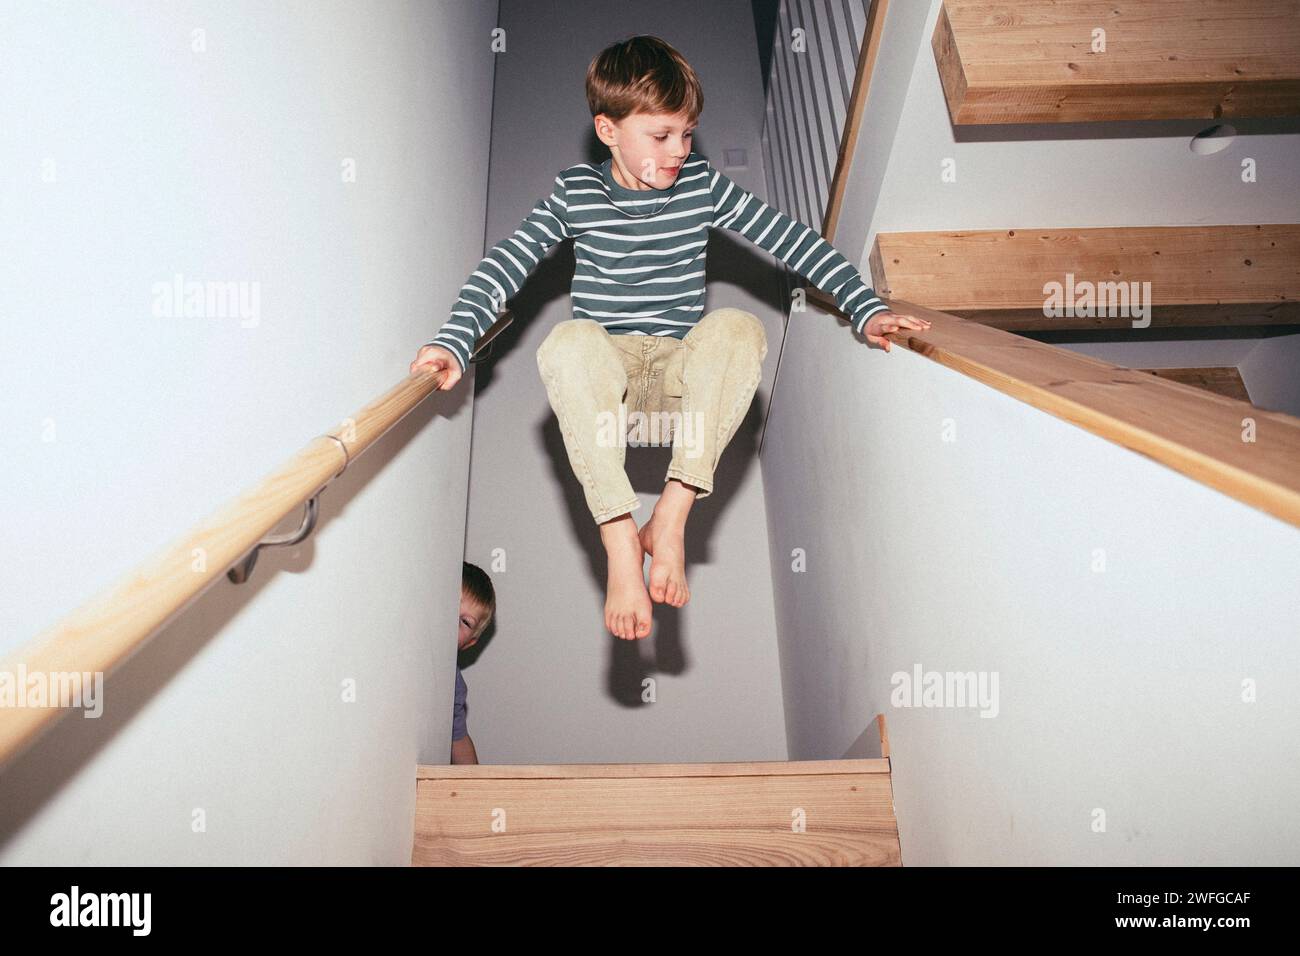 Niedriger Winkel des Jungen, der mitten in der Luft zwischen der Treppe ausbalanciert, während er zu Hause spielt Stockfoto